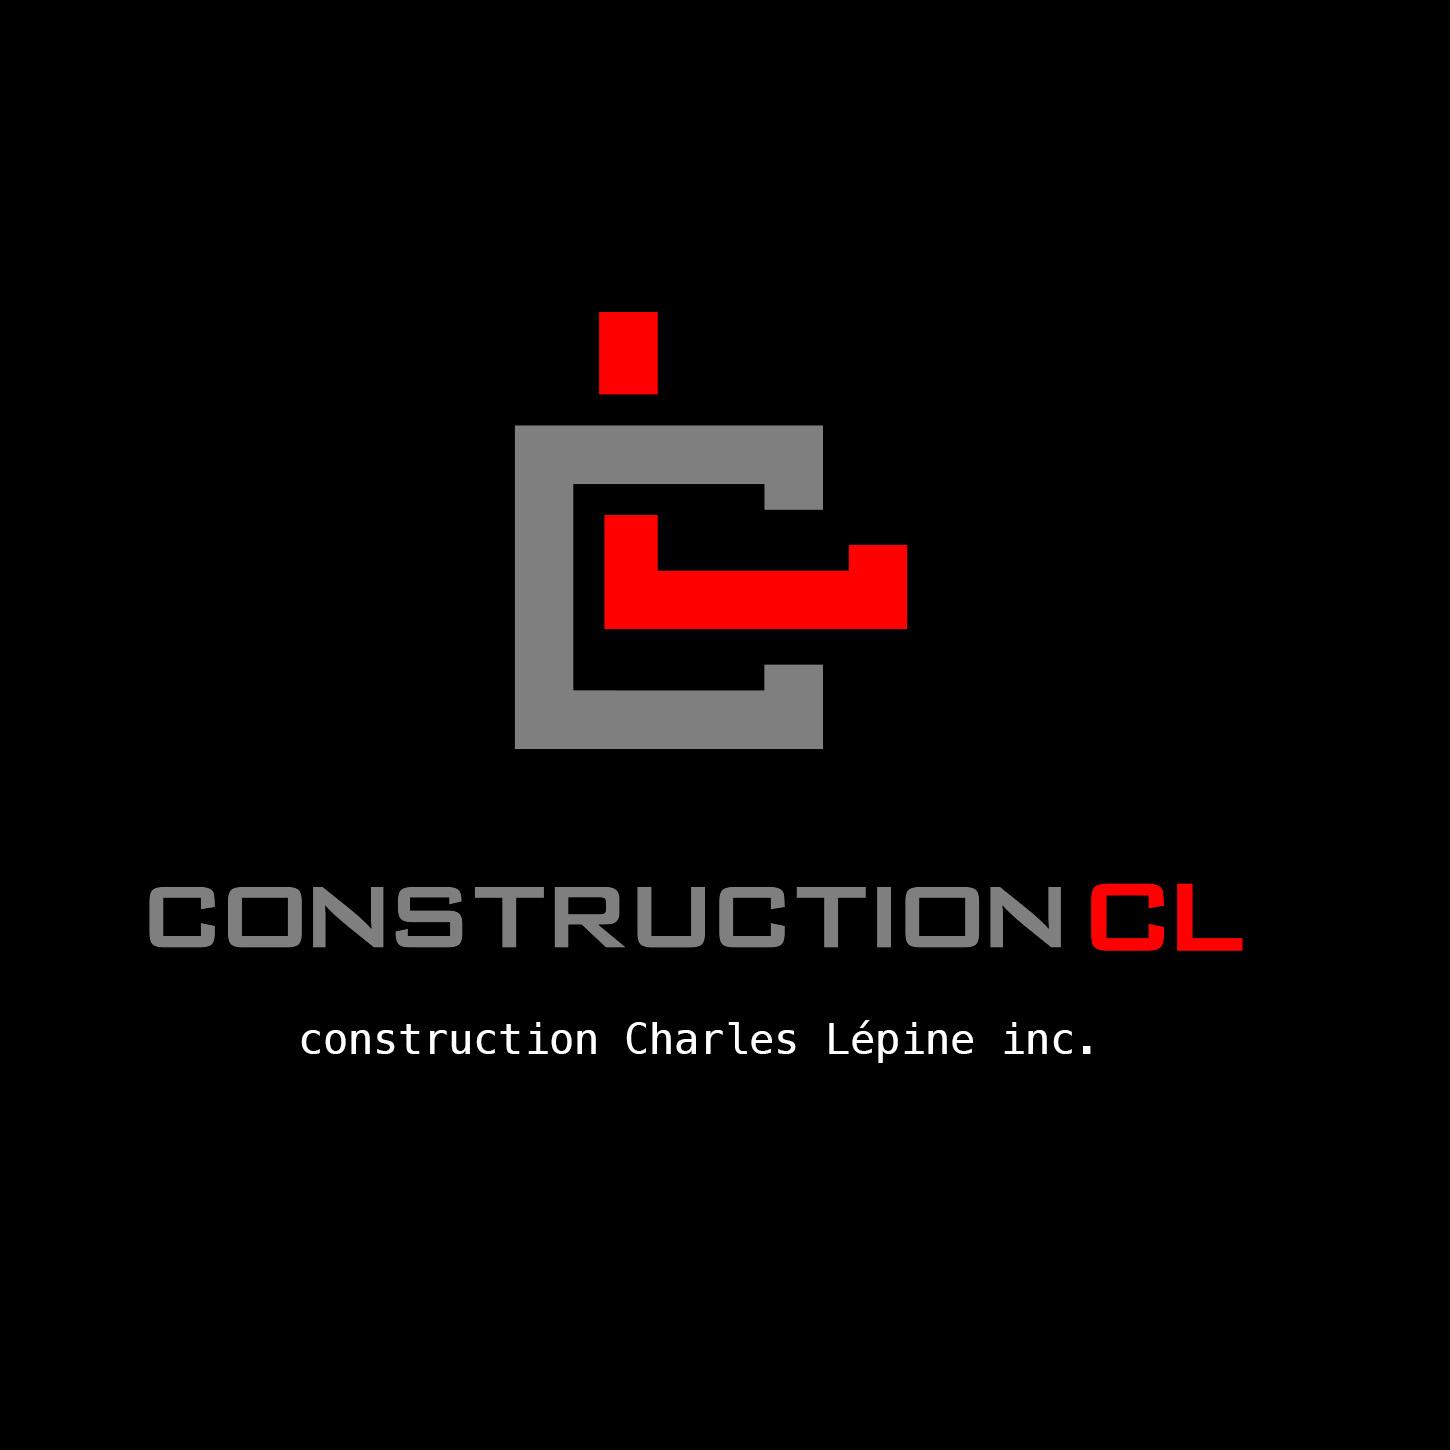 Construction Charles Lépine inc.